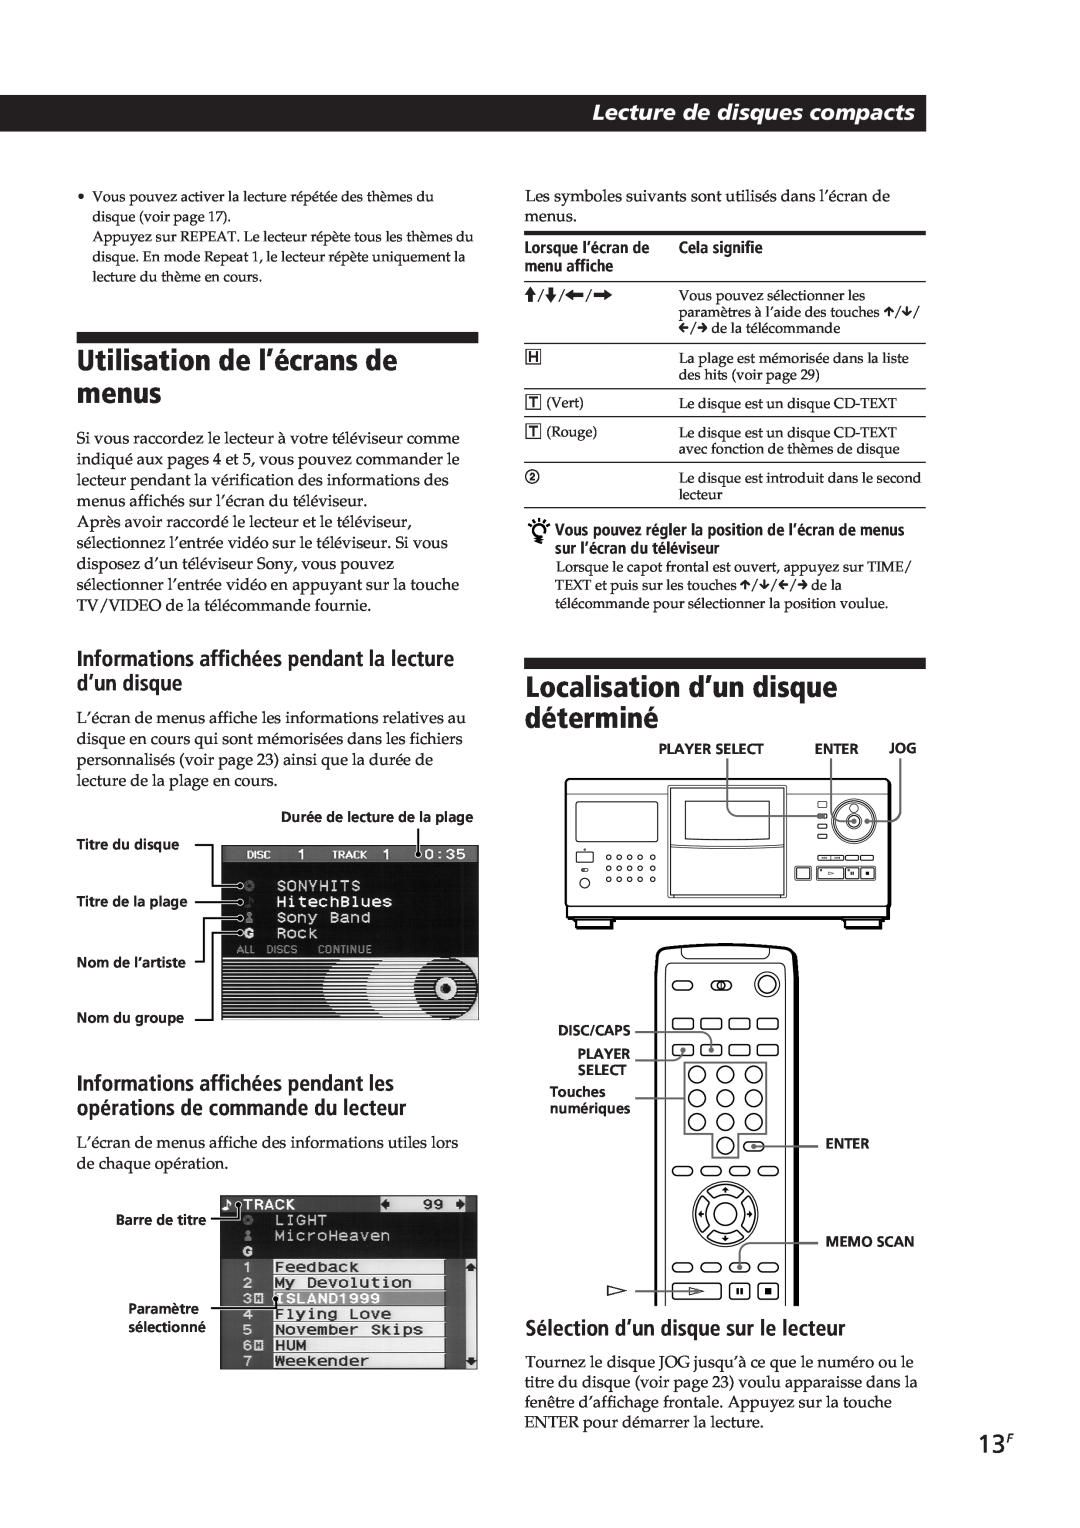 Sony CDP-CX90ES manual Utilisation de l’écrans de menus, Localisation d’un disque déterminé, Lecture de disques compacts 